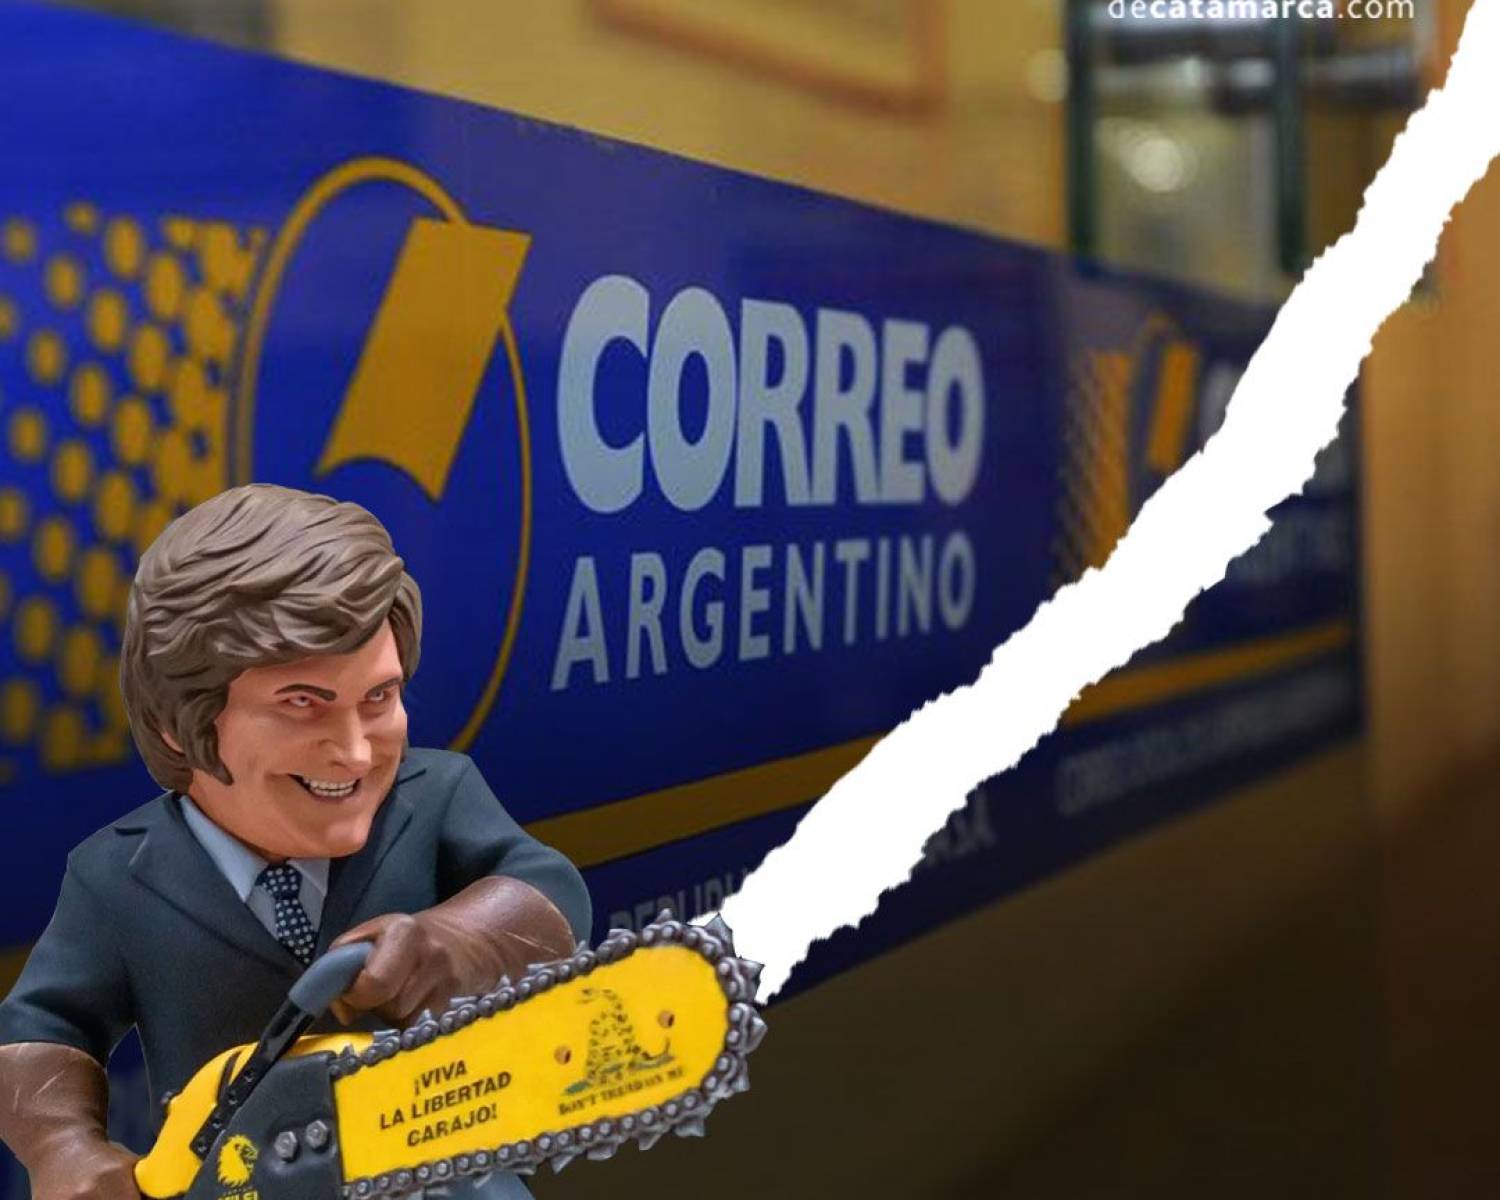 Más motosierra: El lunes 10 trabajadores serán cesanteados en el Correo Argentino